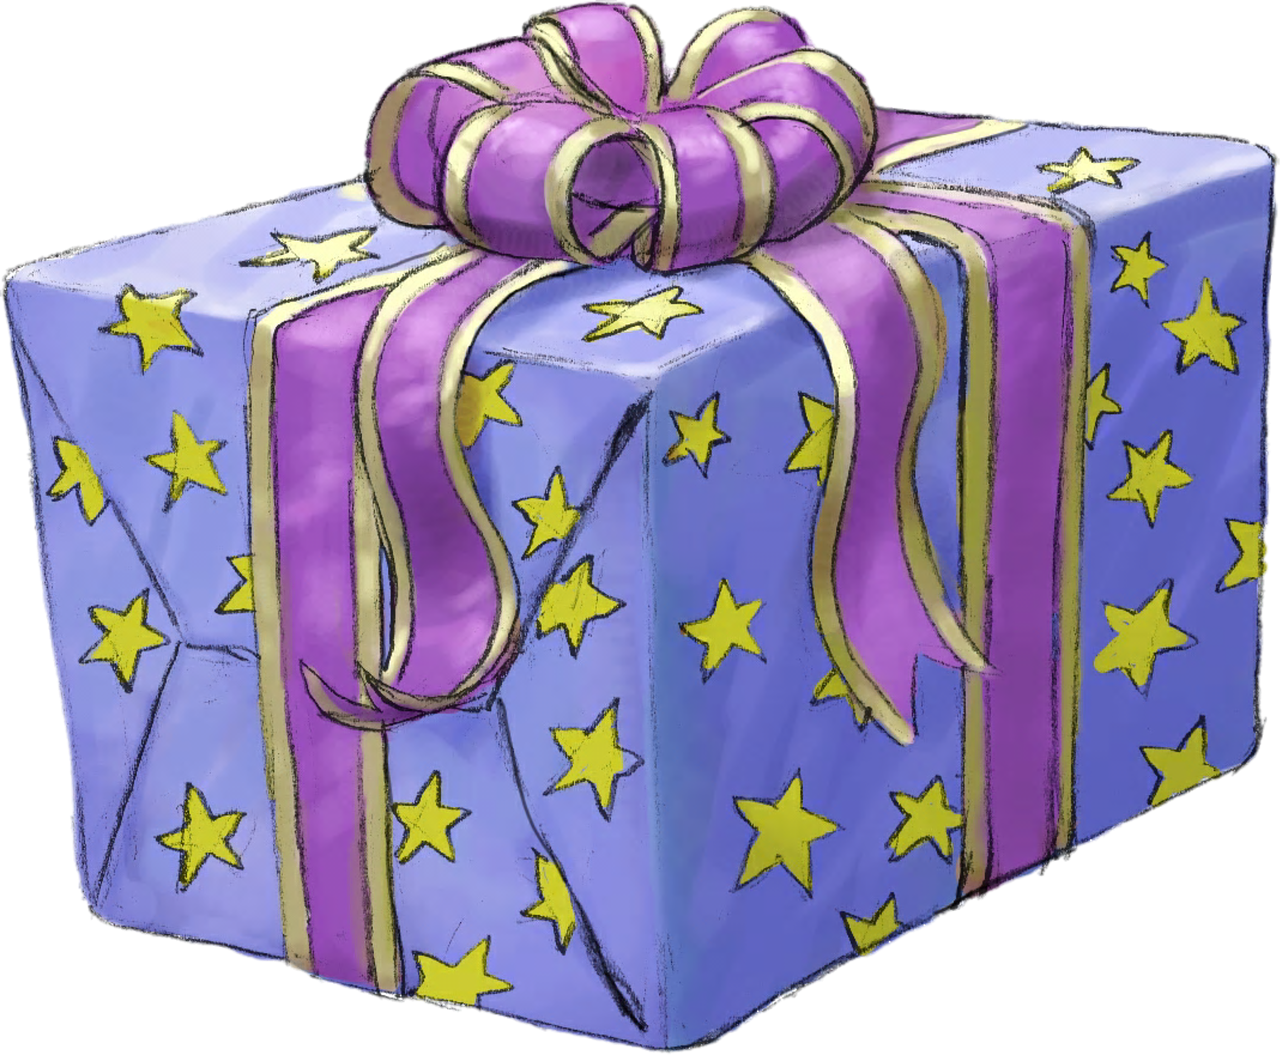 Картинка подарки нарисованная. Красивая подарочная коробка. Подарок рисунок. Подарочная коробка мультяшная. Коробка с подарком мультяшная.